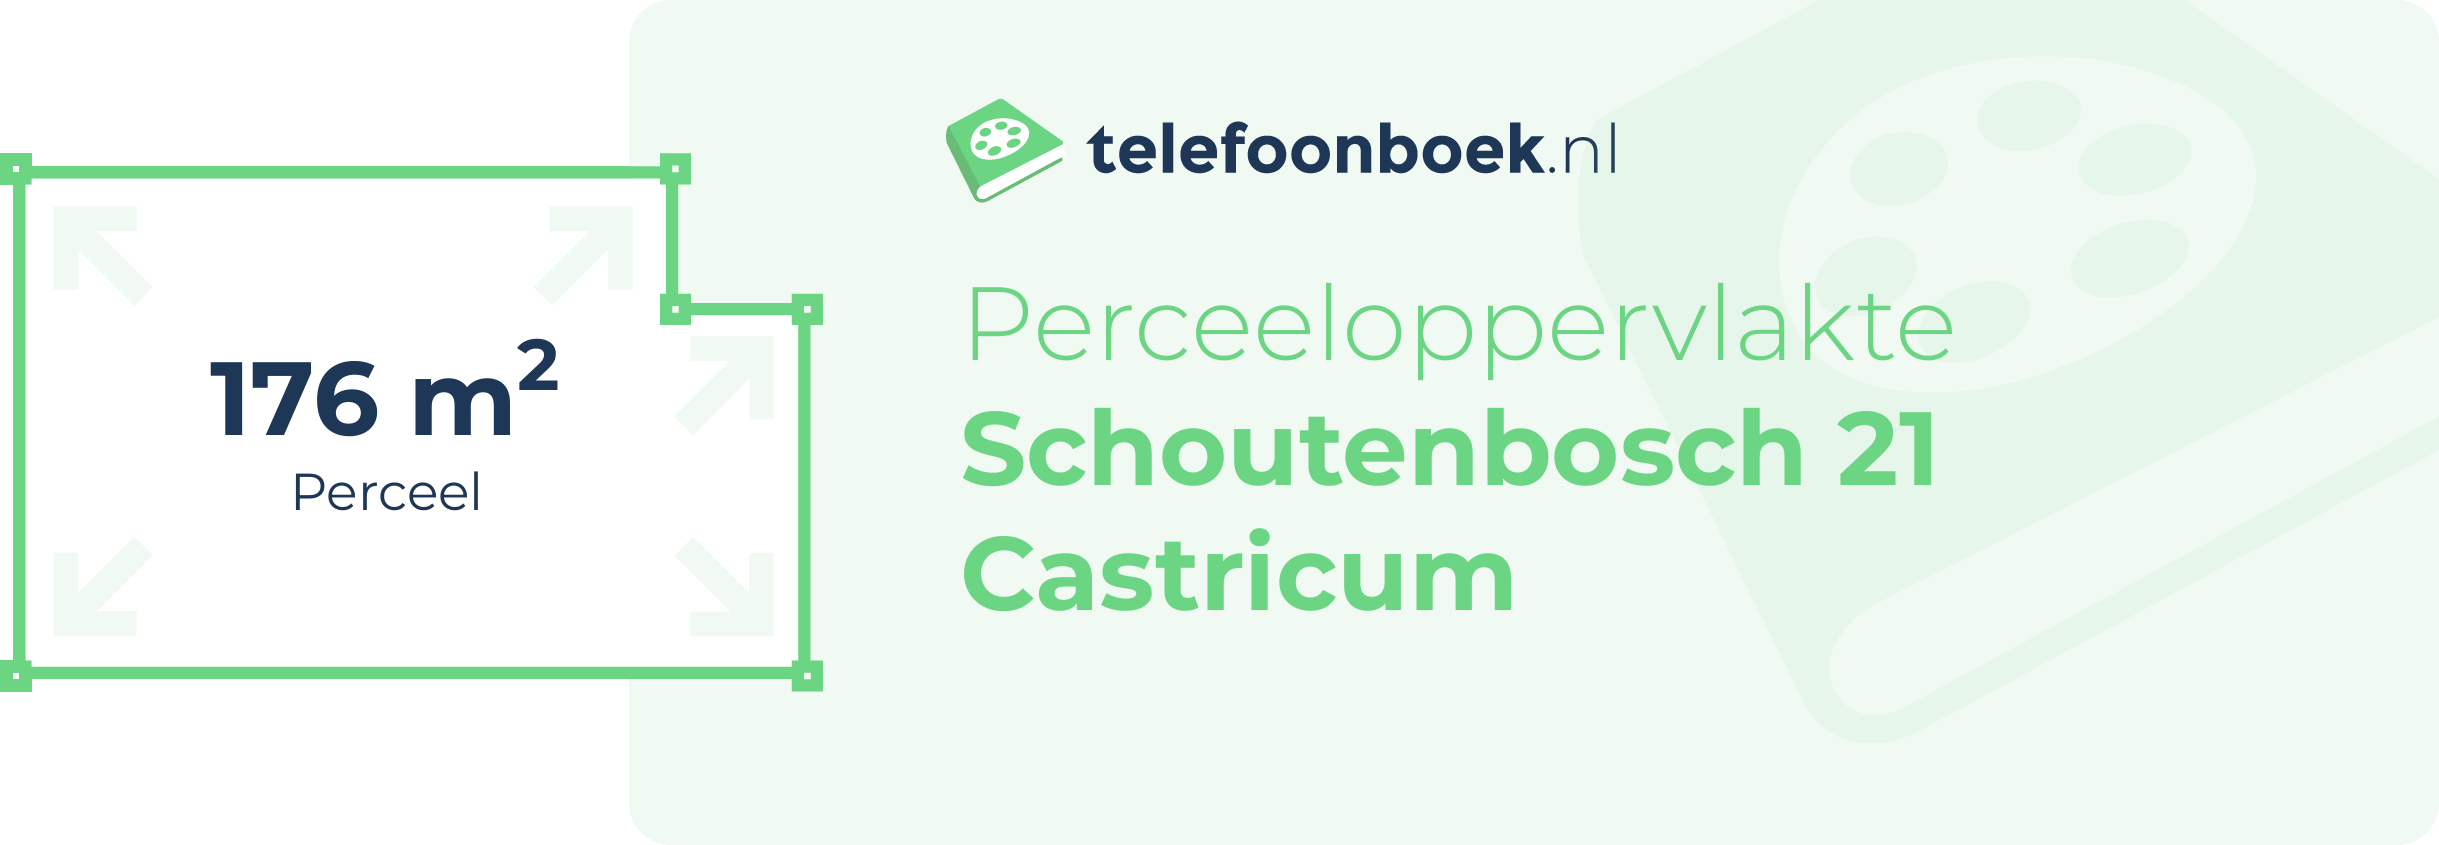 Perceeloppervlakte Schoutenbosch 21 Castricum